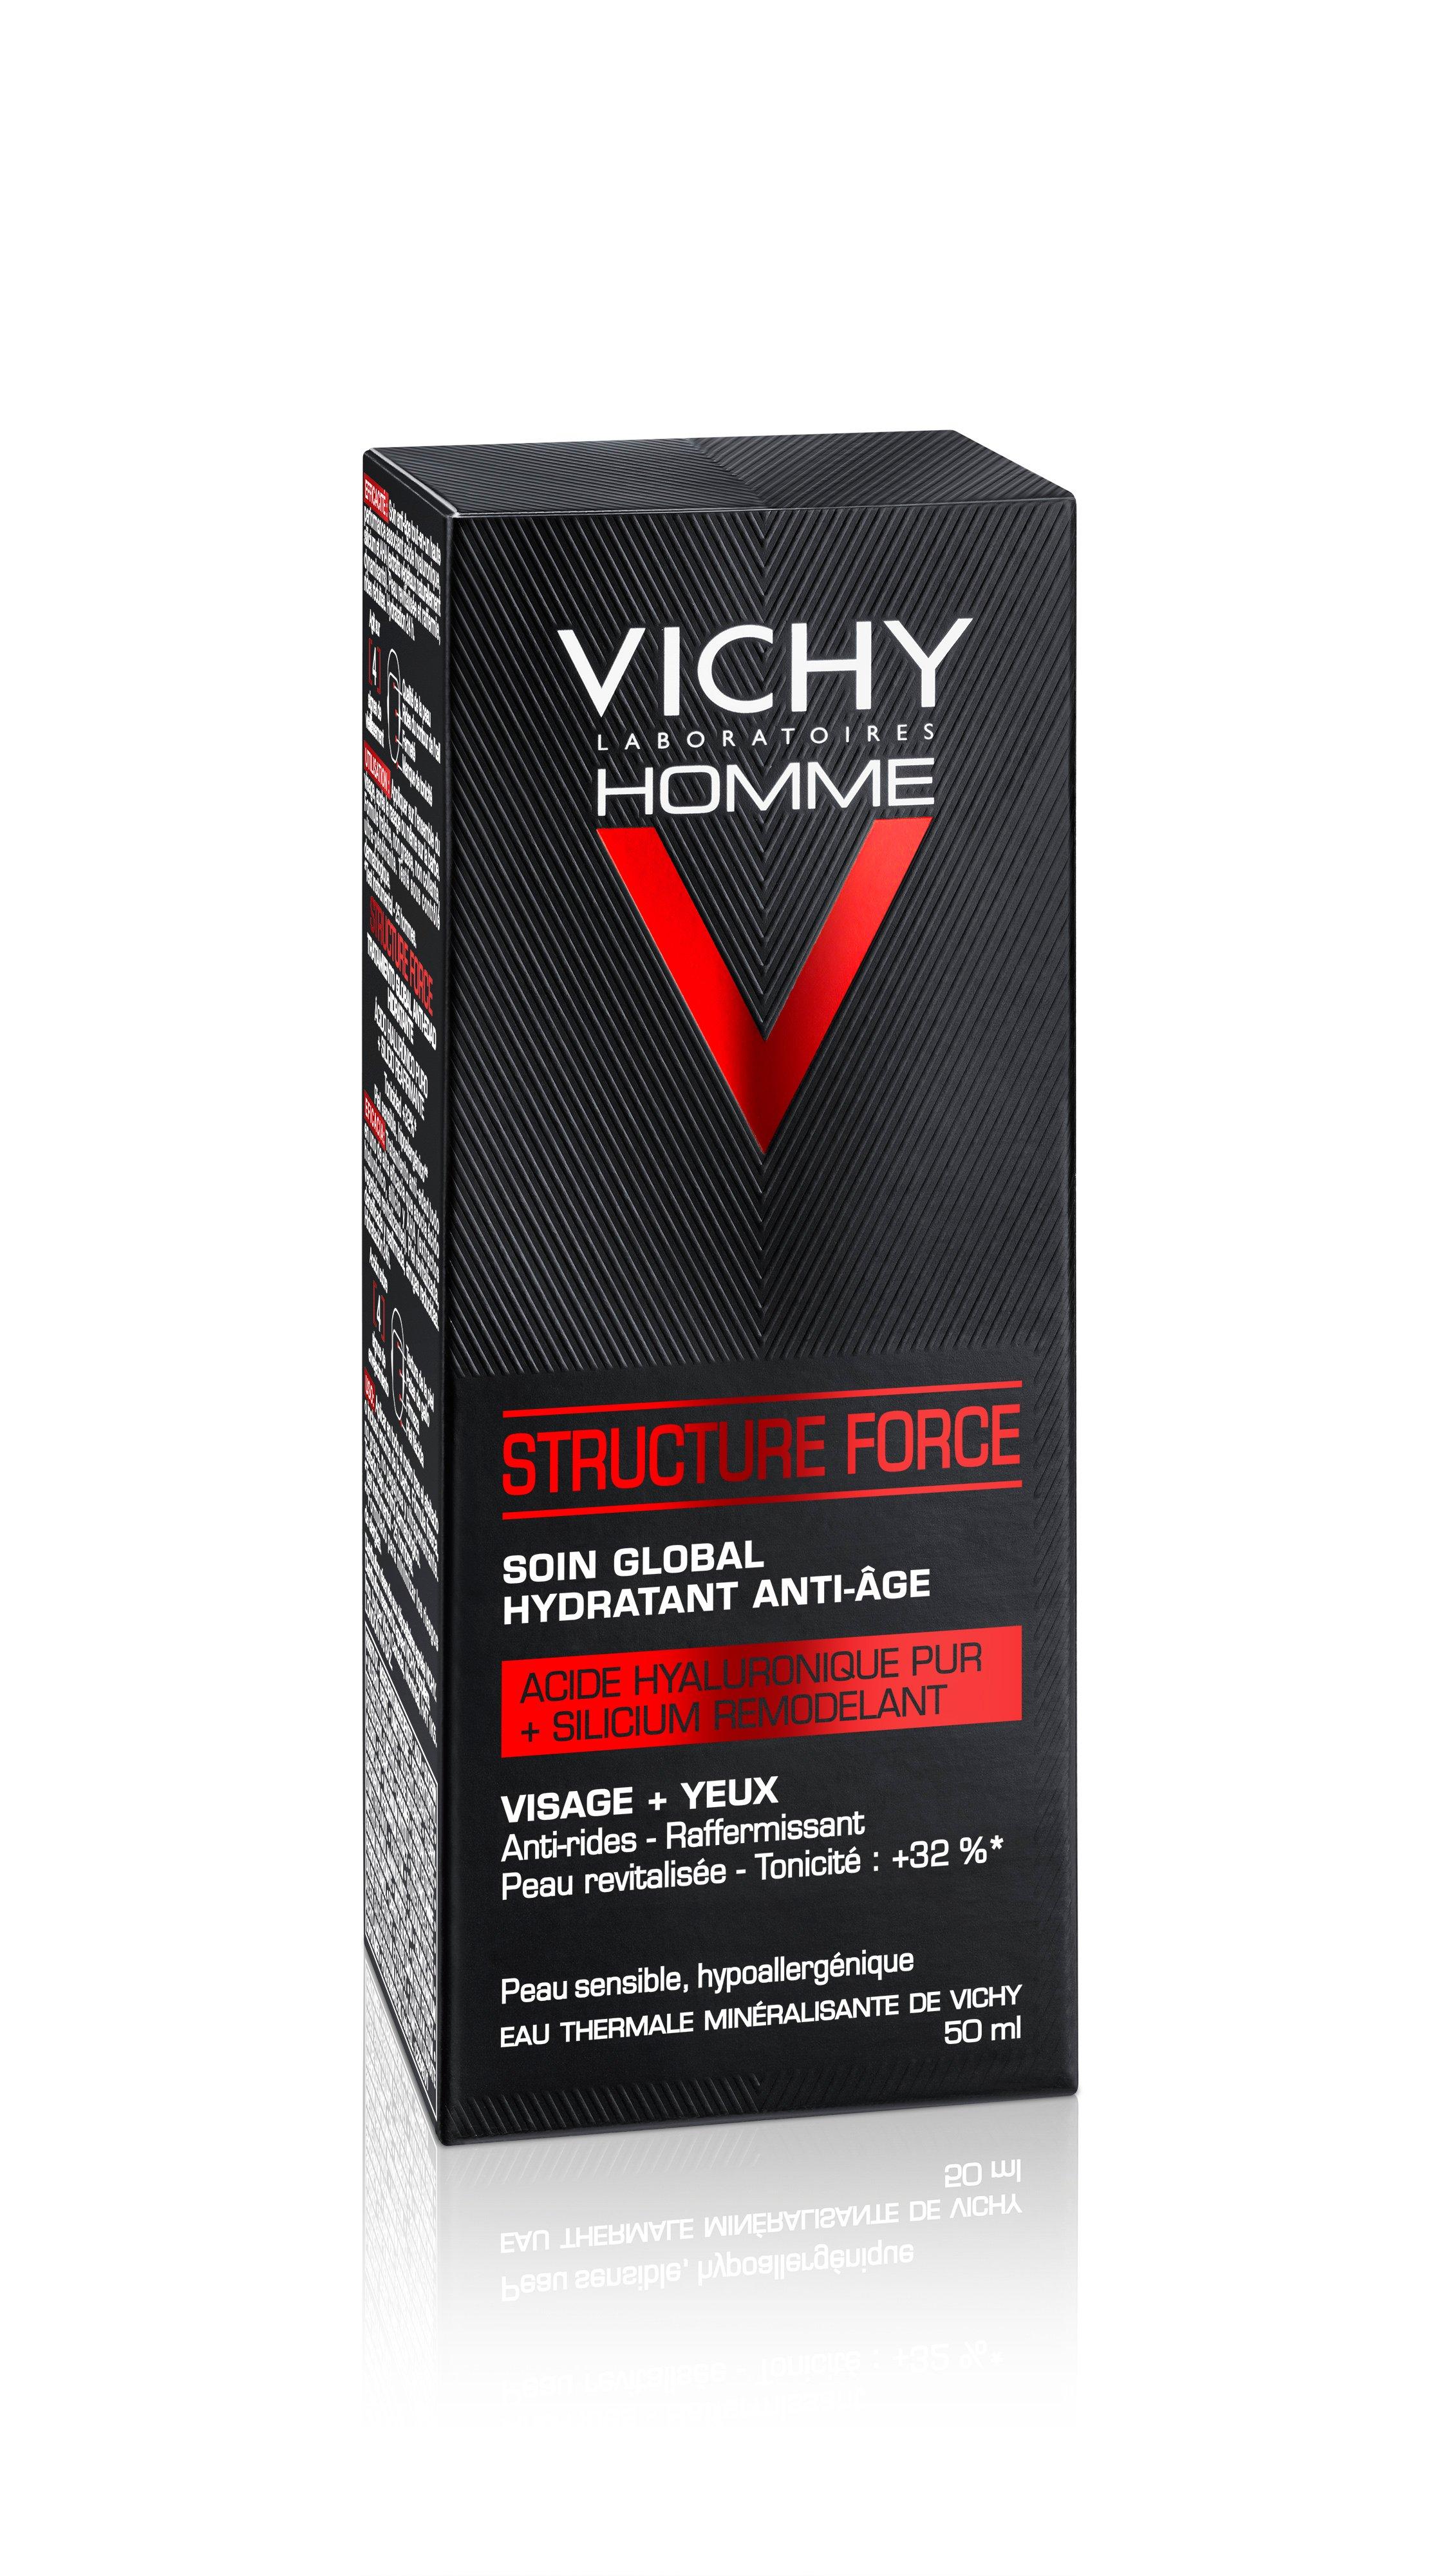 VICHY  Homme Structure Force - Trattamento anti-età completo per viso e occhi 